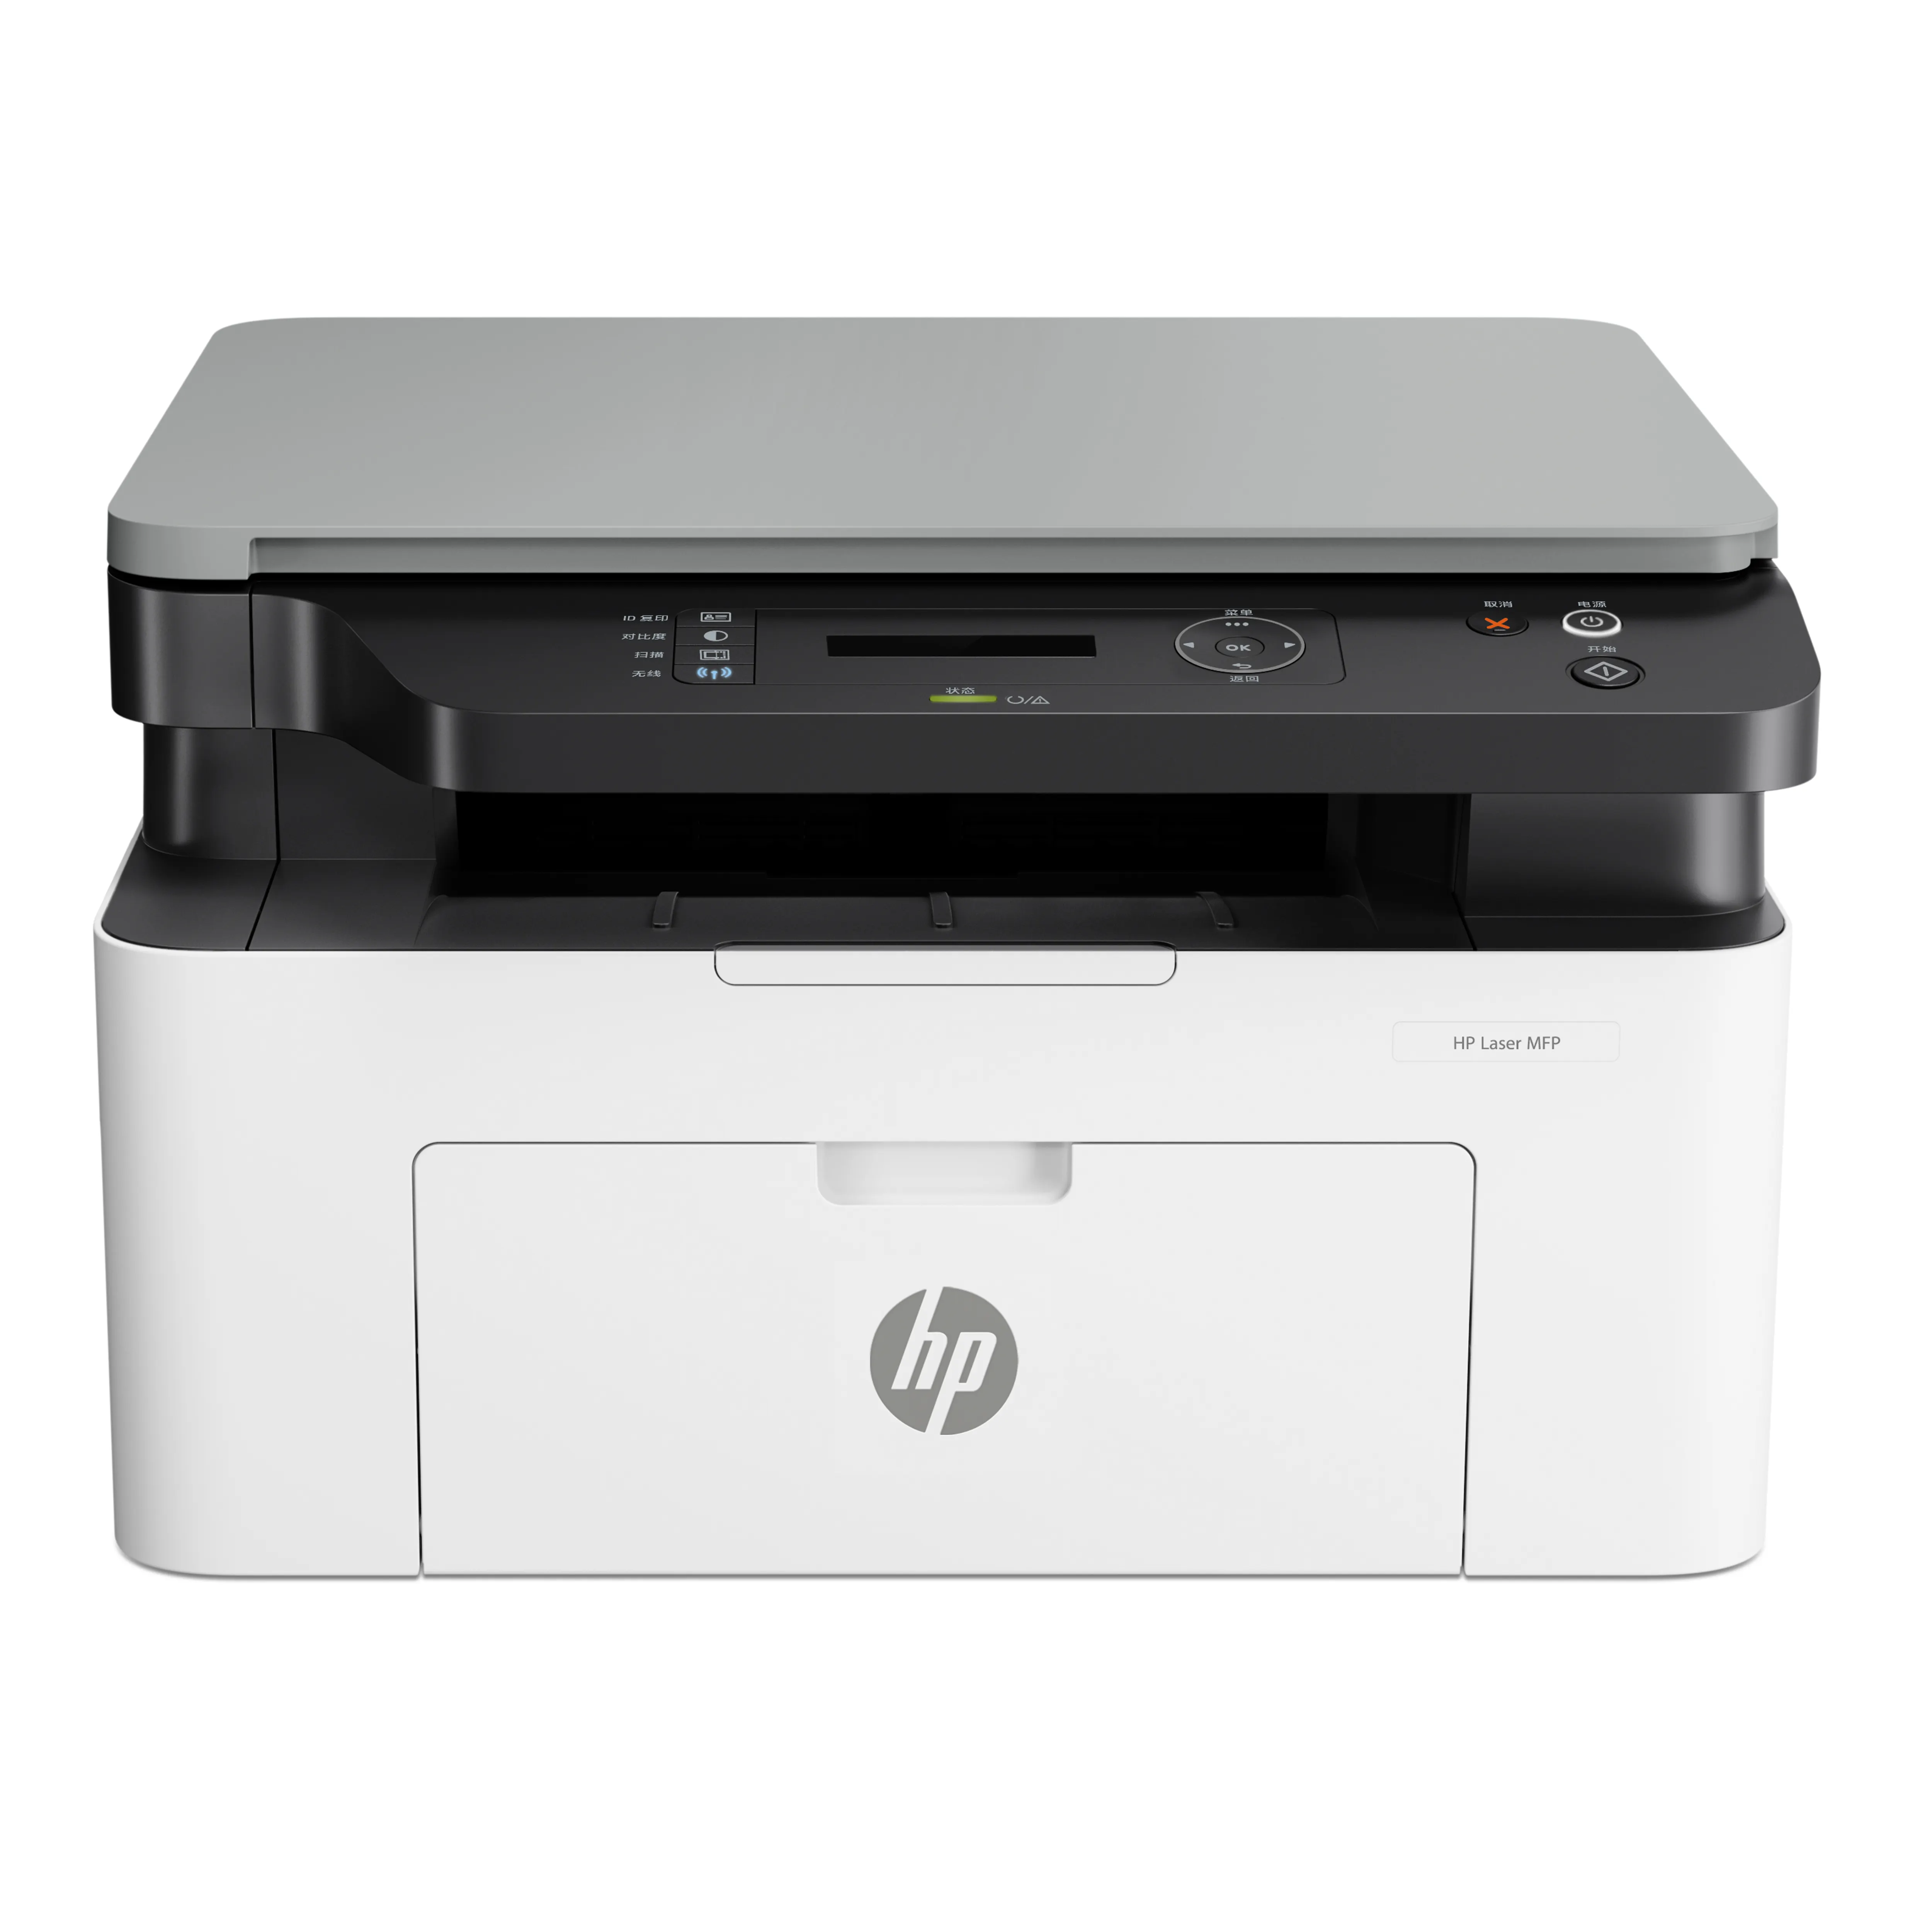 HP 1136W impresora láser en blanco y negro MFP WiFi escanear copia de impresión